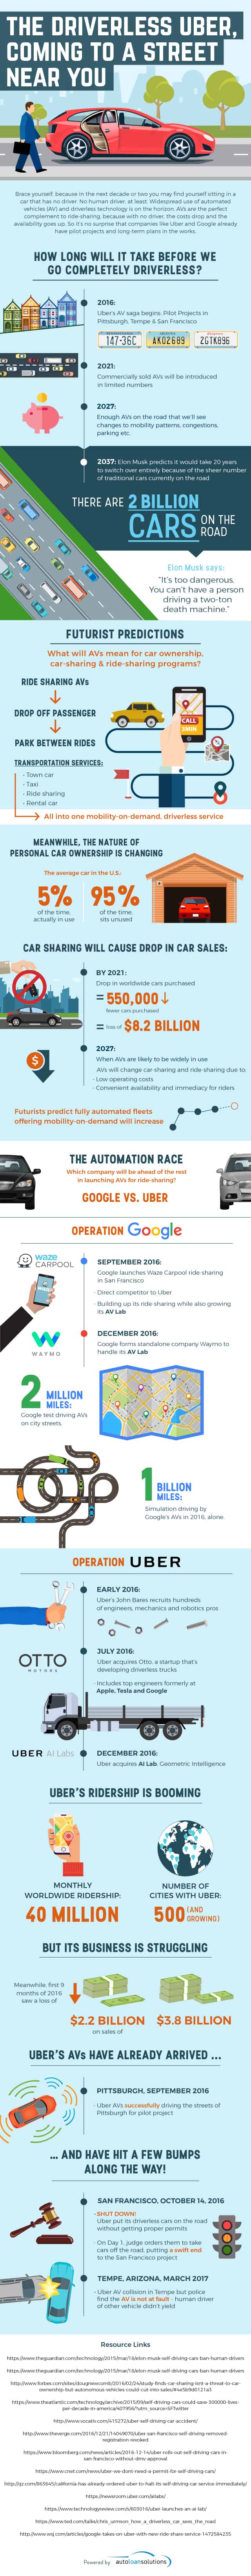 plans for driverless uber